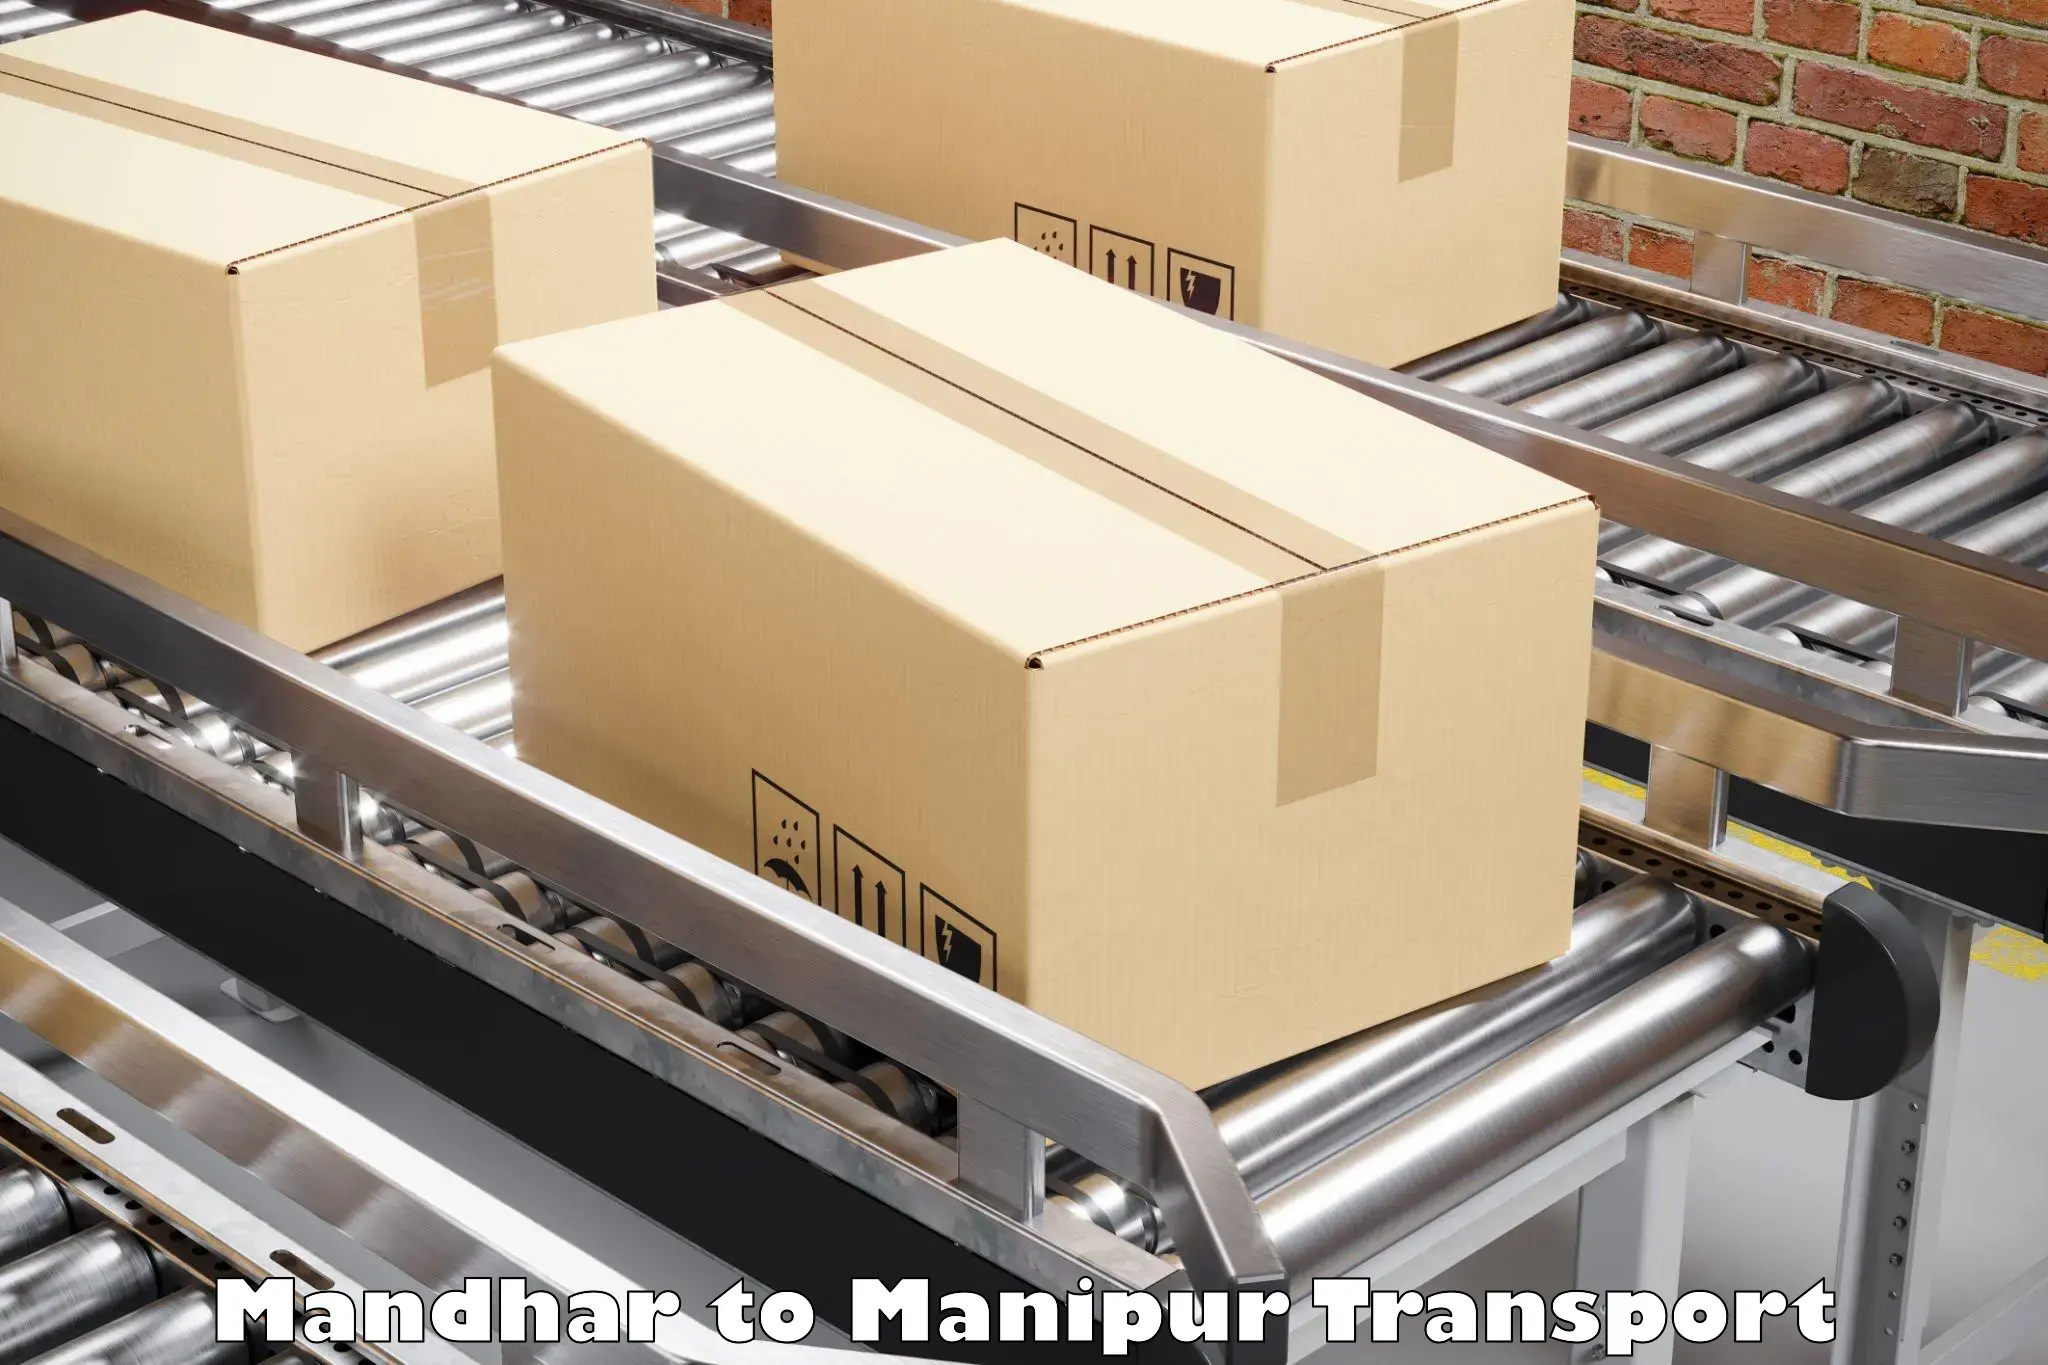 Commercial transport service Mandhar to Chandel